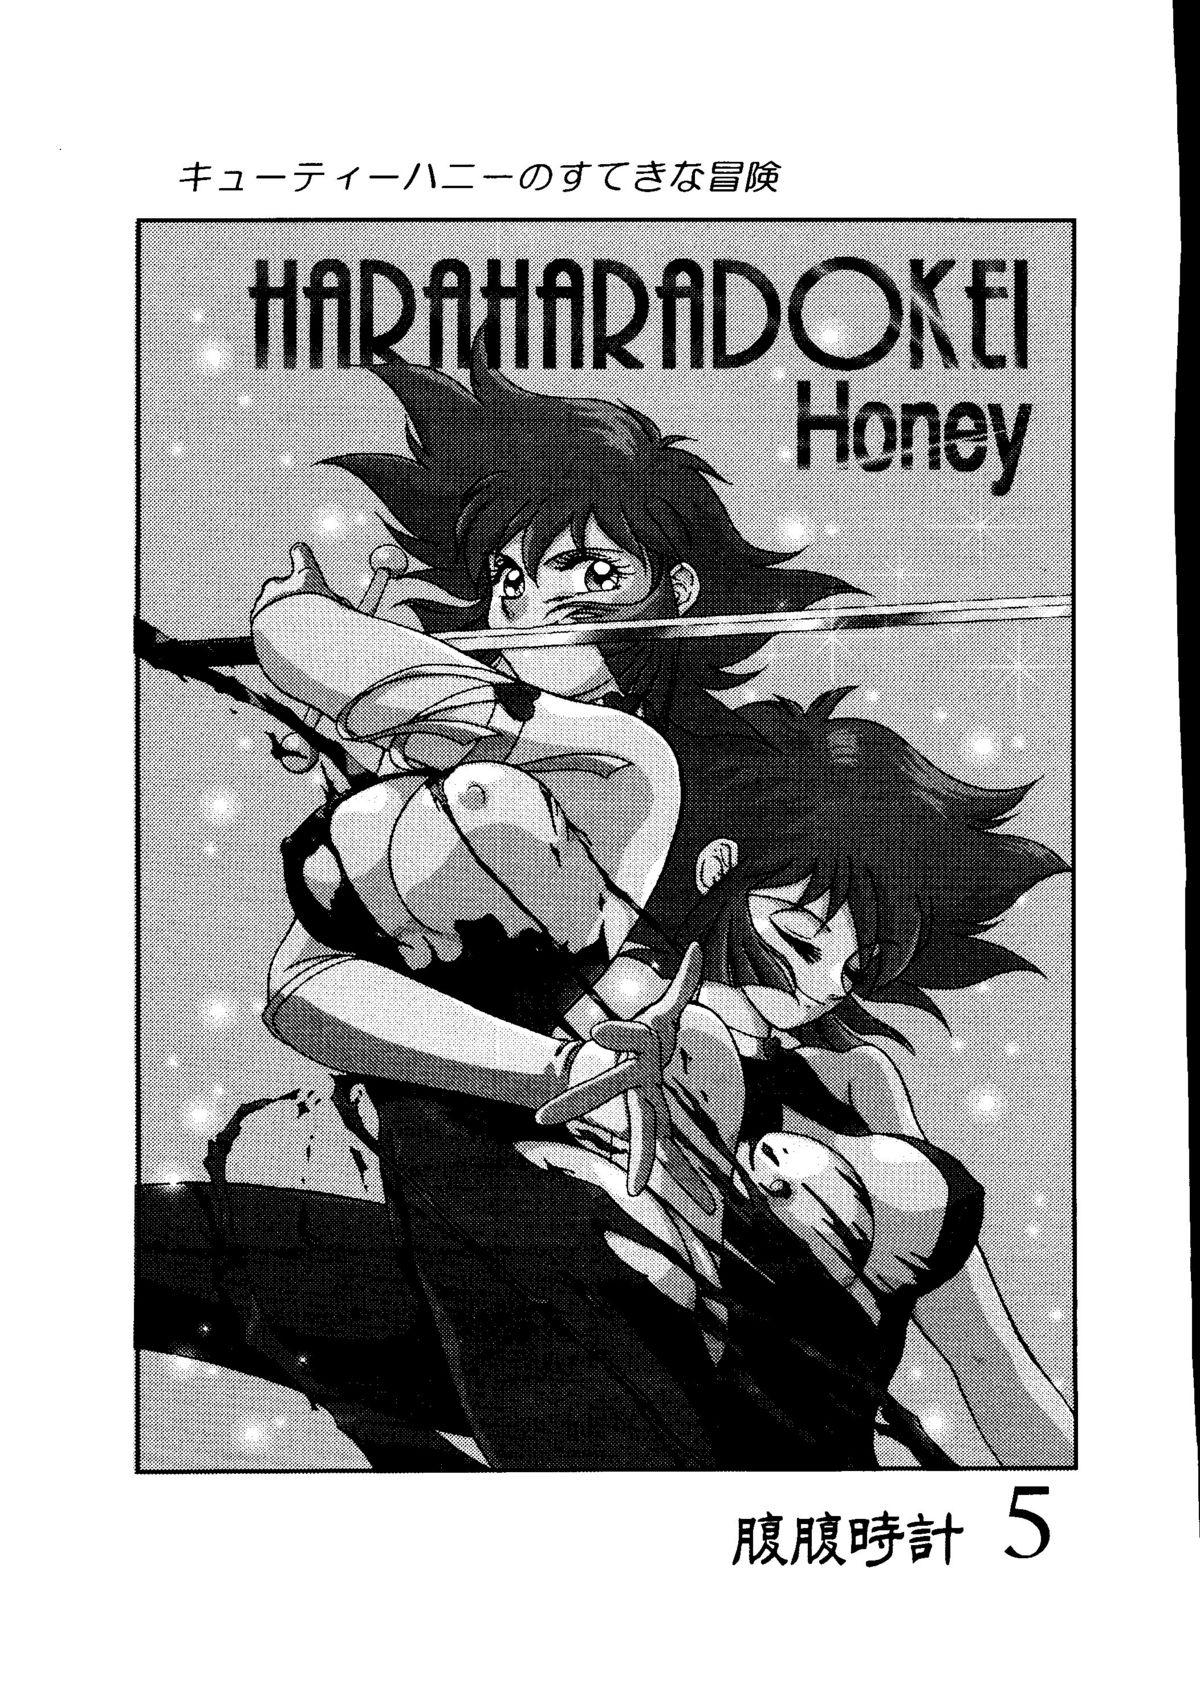 Hara Hara Dokei 5 - Hara Hara Dokei Honey 1